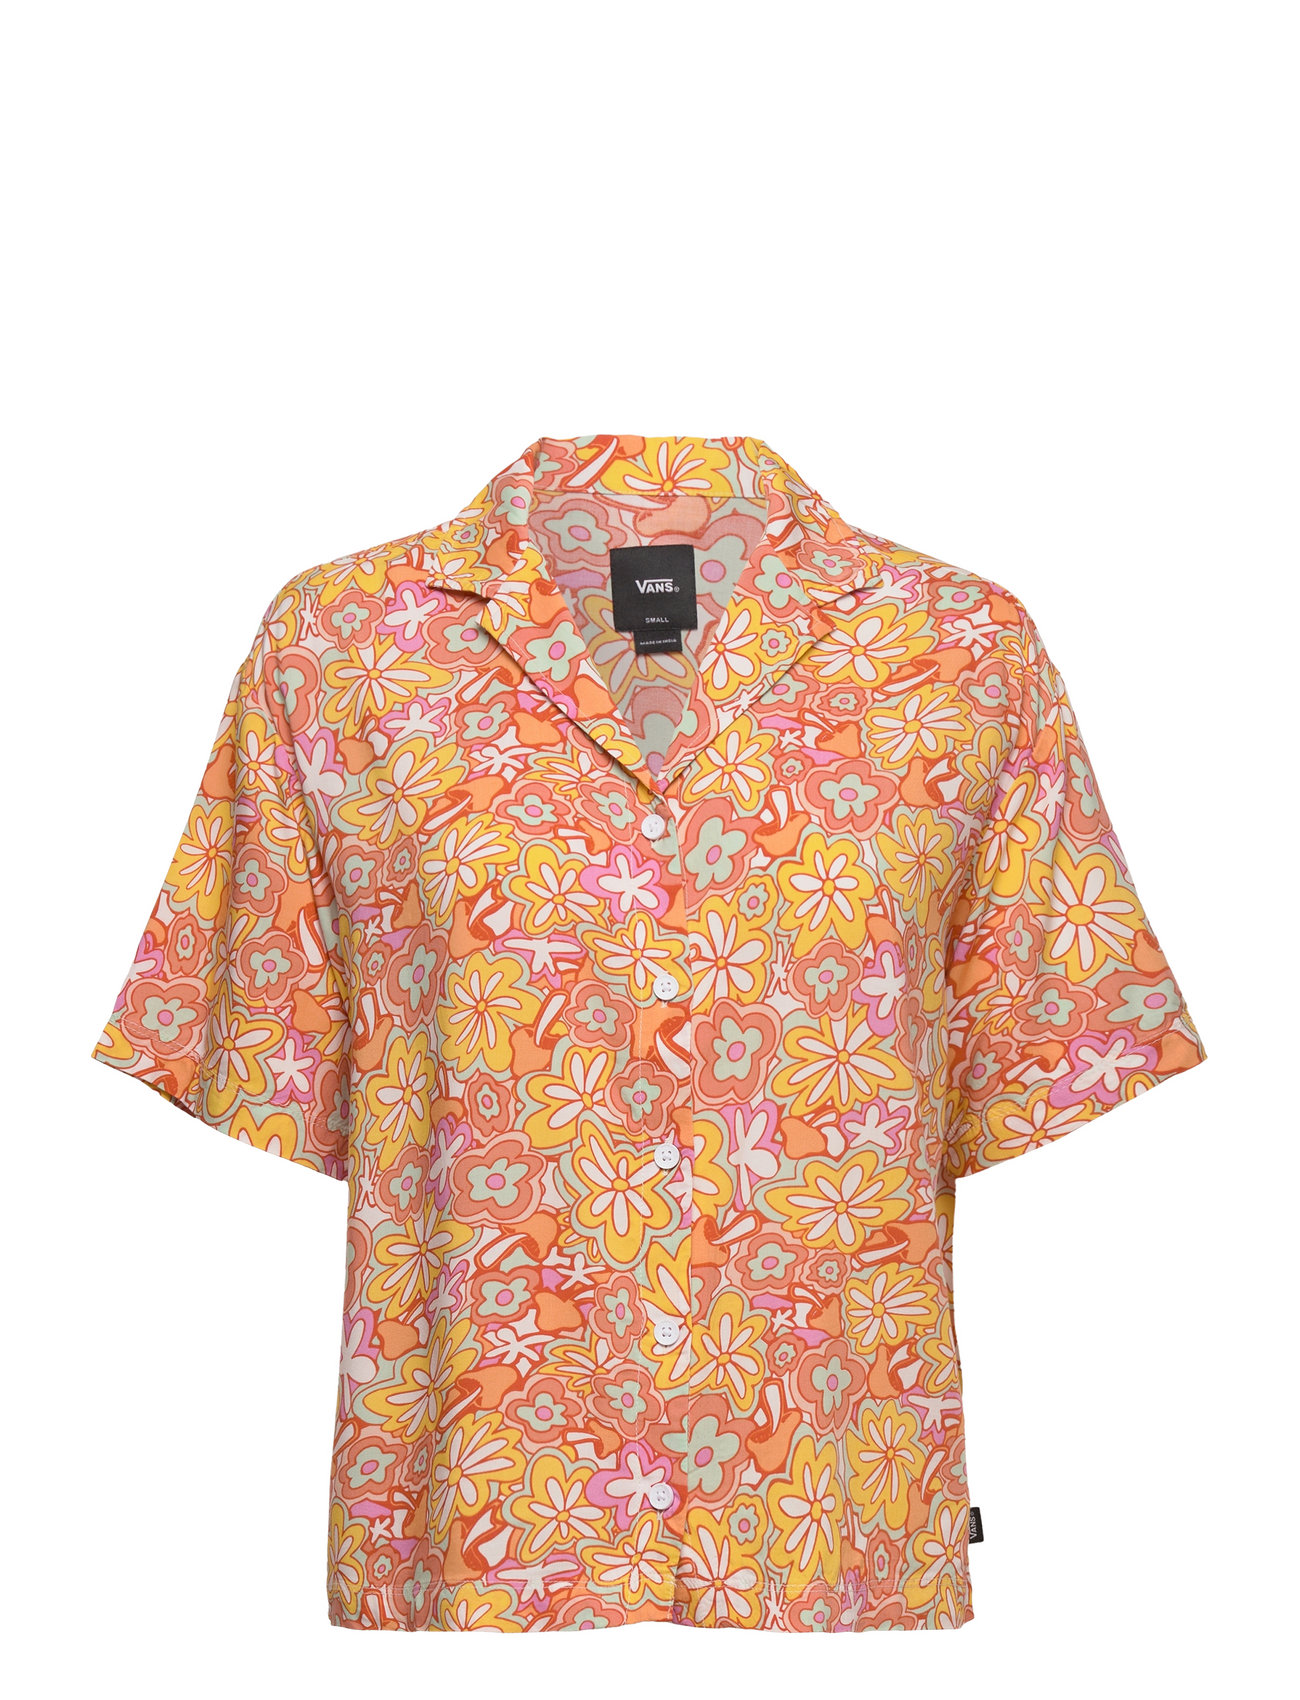 Resort Floral Ss Woven Sport Shirts Short-sleeved Orange VANS